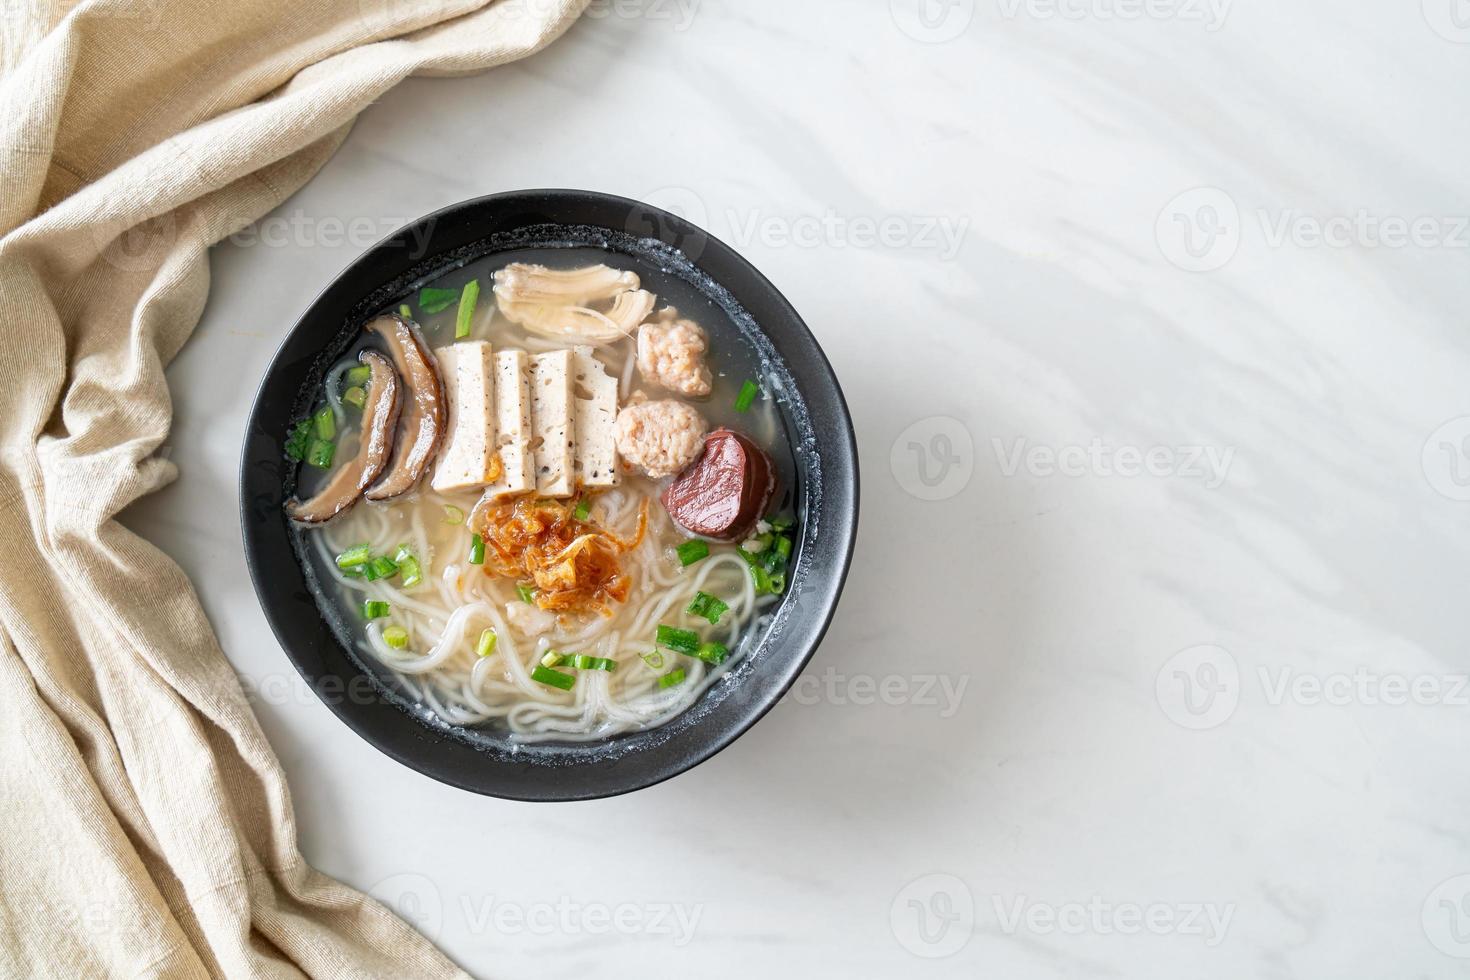 sopa de fideos de arroz vietnamita con salchicha vietnamita servida con verduras y cebolla crujiente foto